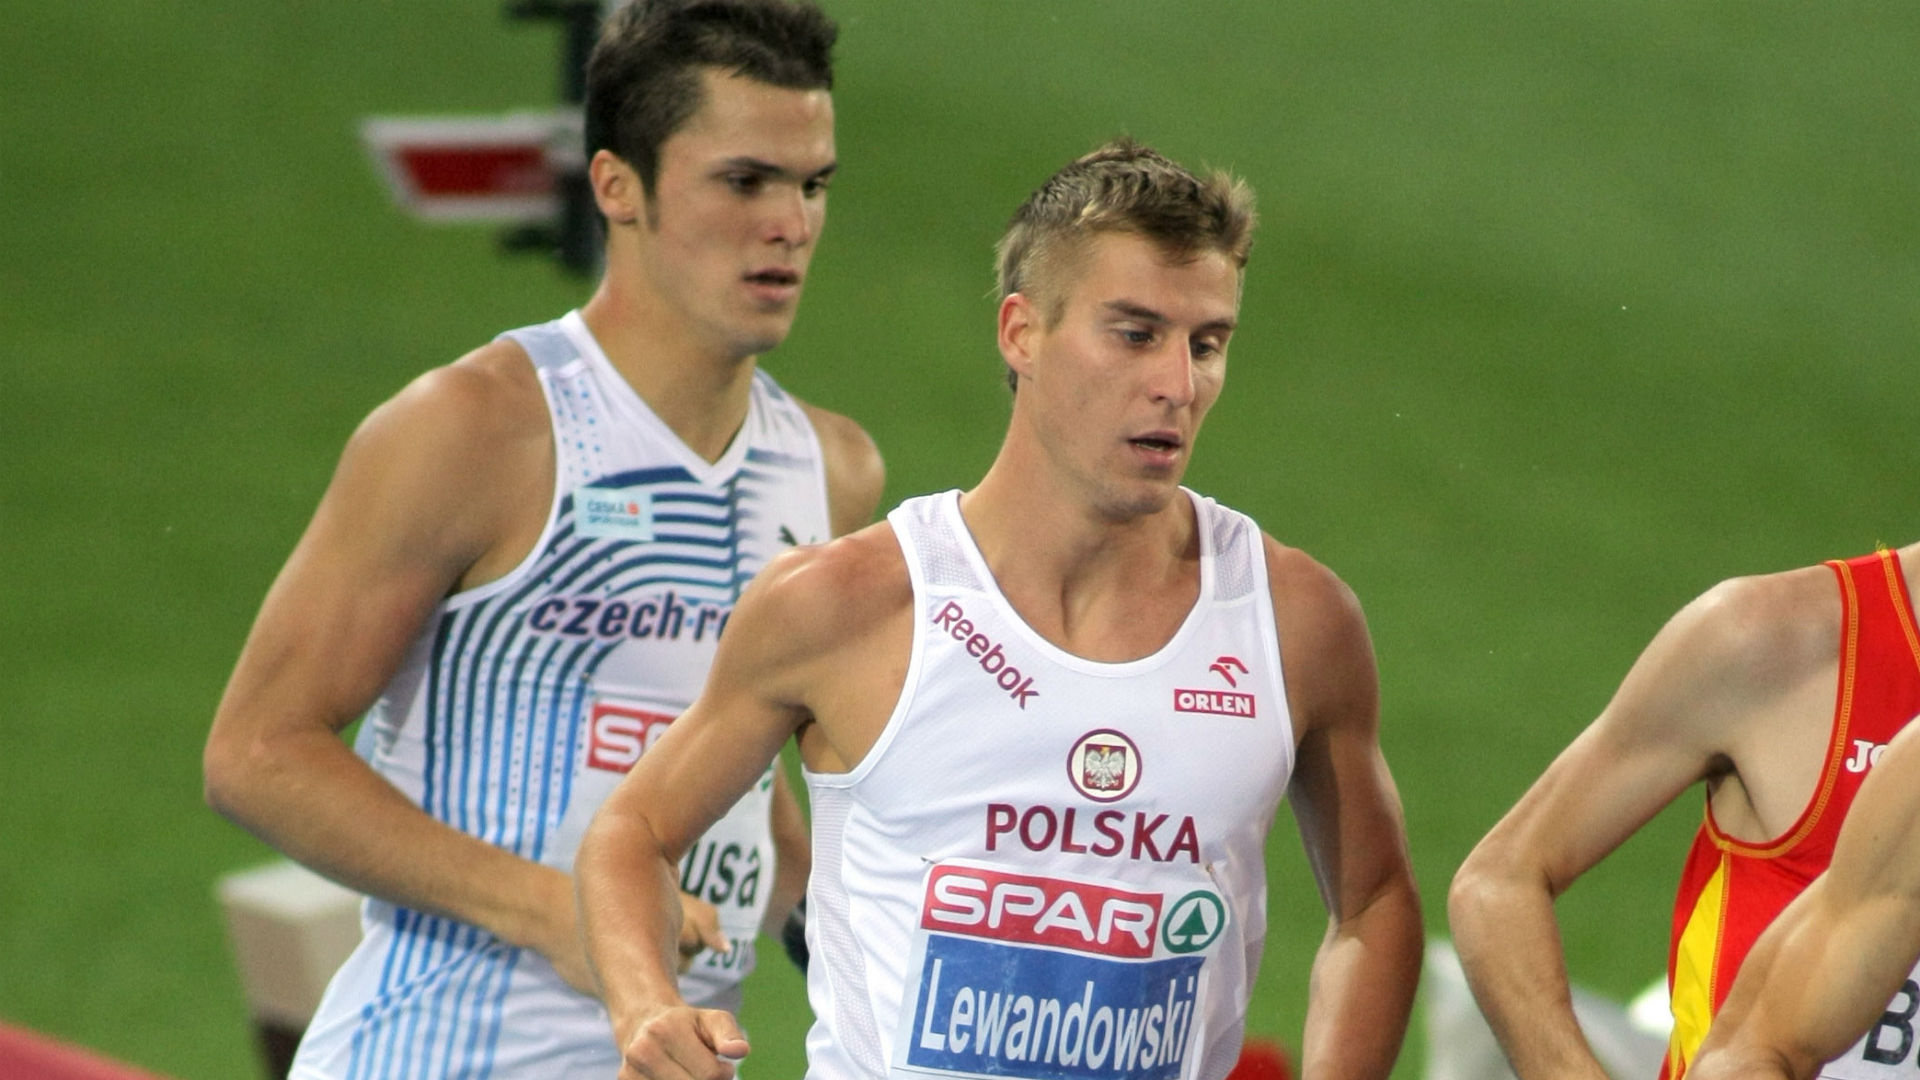 Marcin Lewandowski, Glasgow 2019, Polish athletics team captain, Wiadomoci, 1920x1080 Full HD Desktop